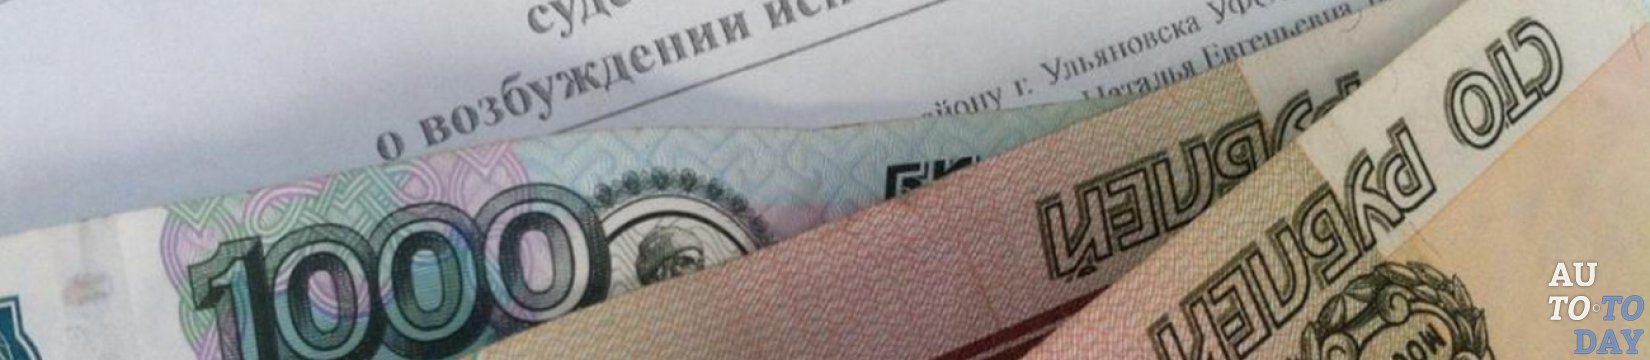 В каком мфц новосибирске можно сменить паспорт